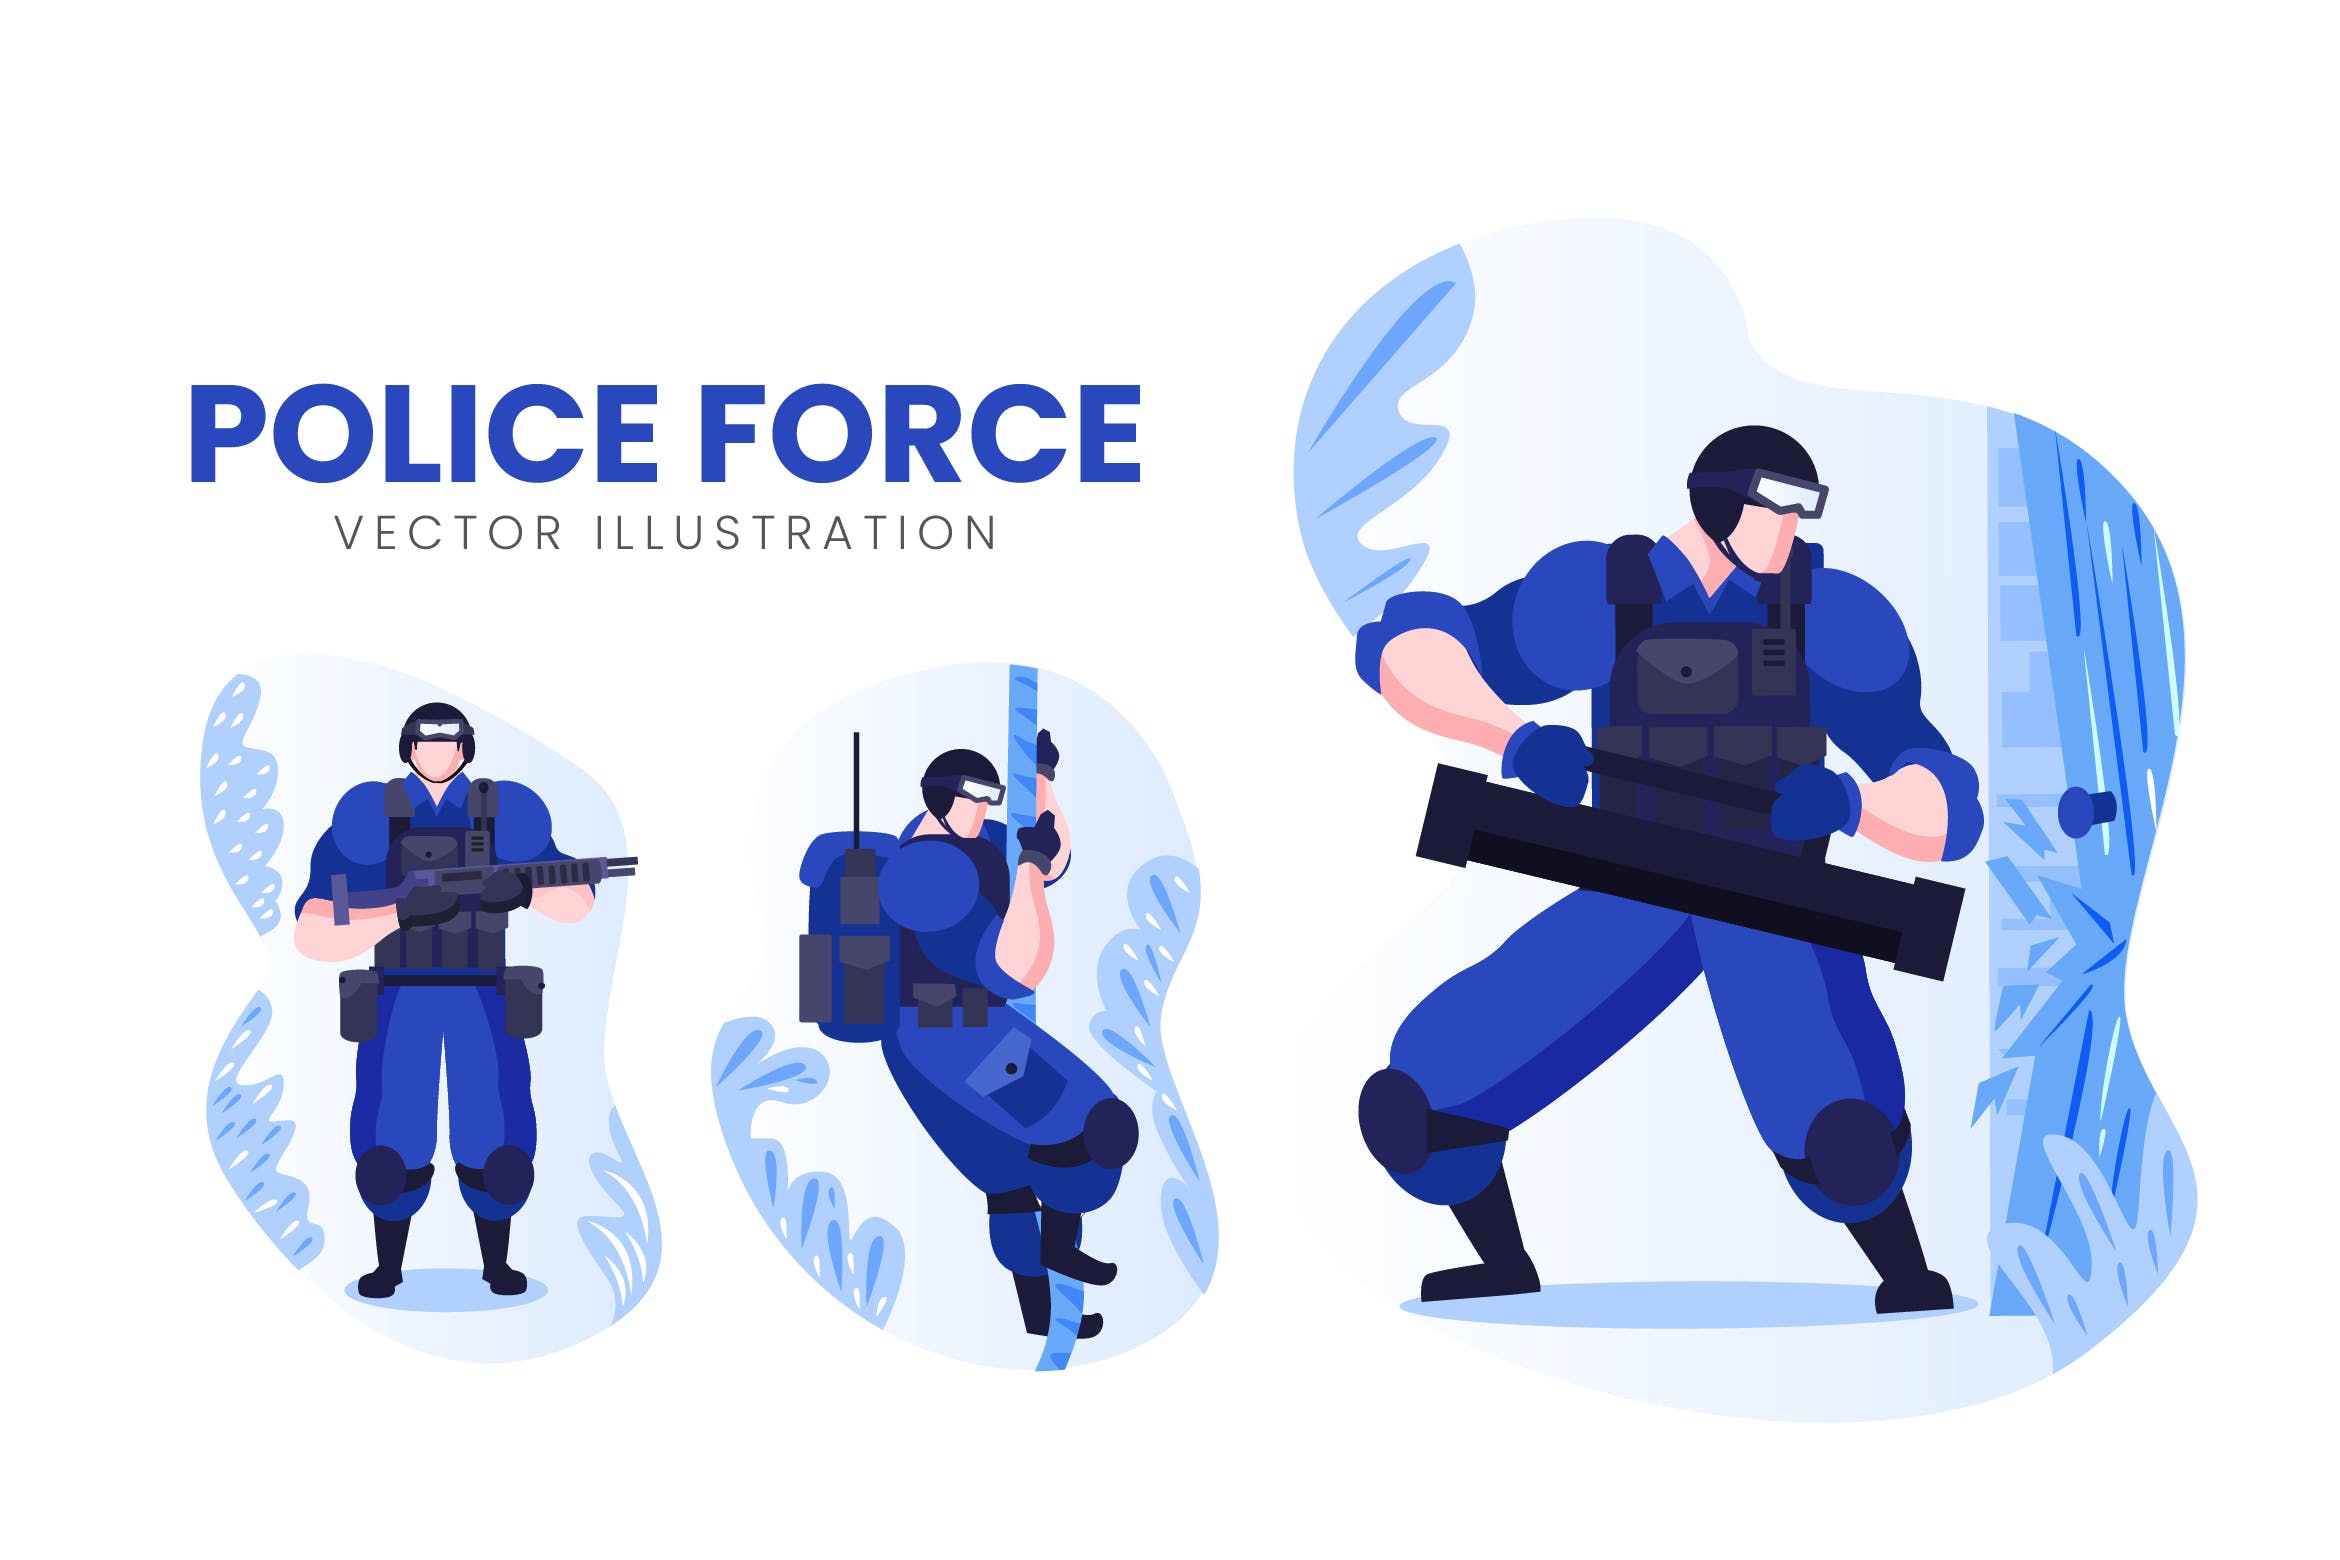 警察人物形象蚂蚁素材精选手绘插画矢量素材 Police Force Vector Character Set插图